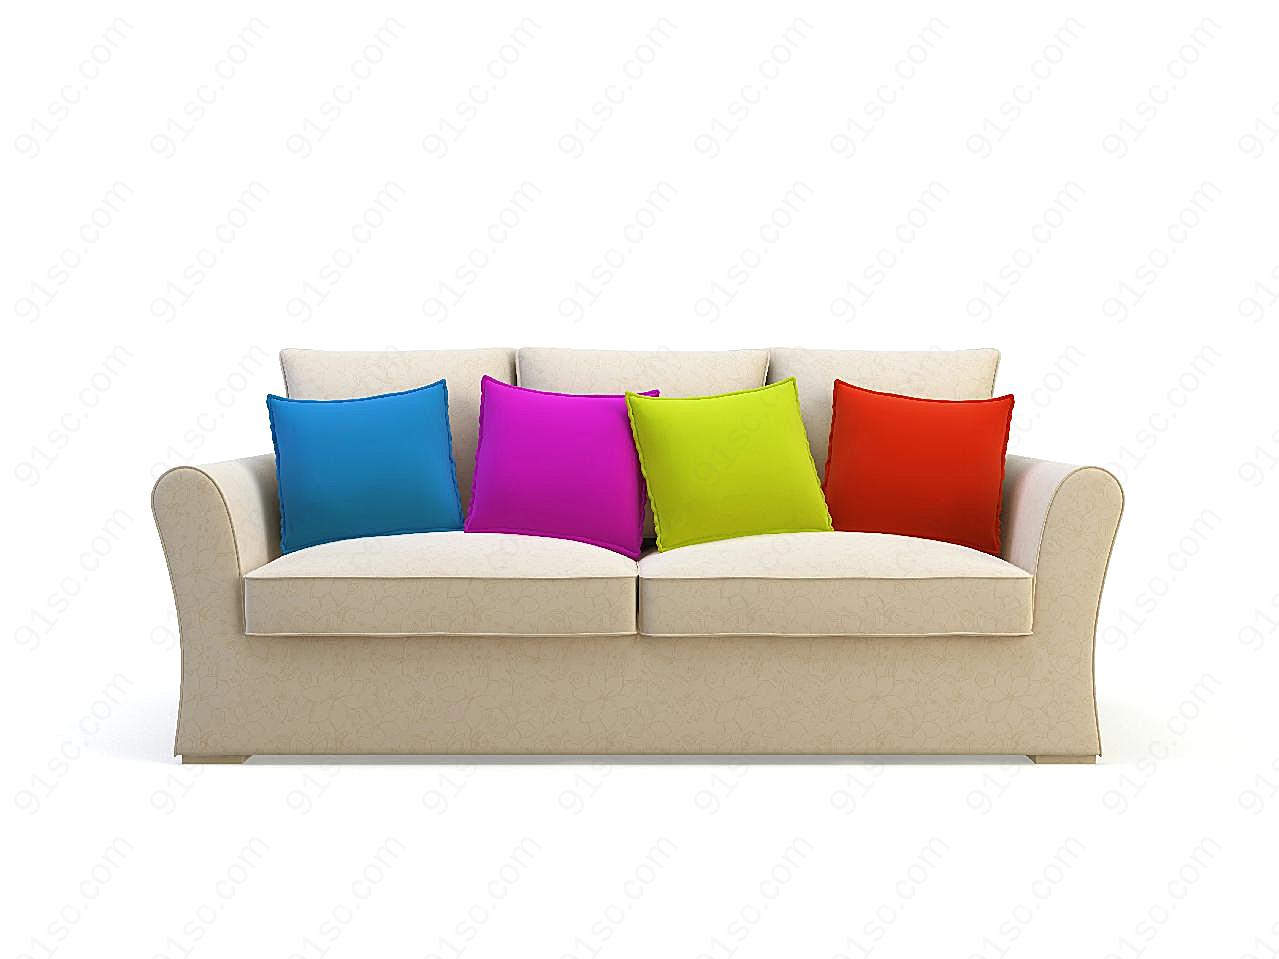 米色沙发与彩色抱枕图片桌椅